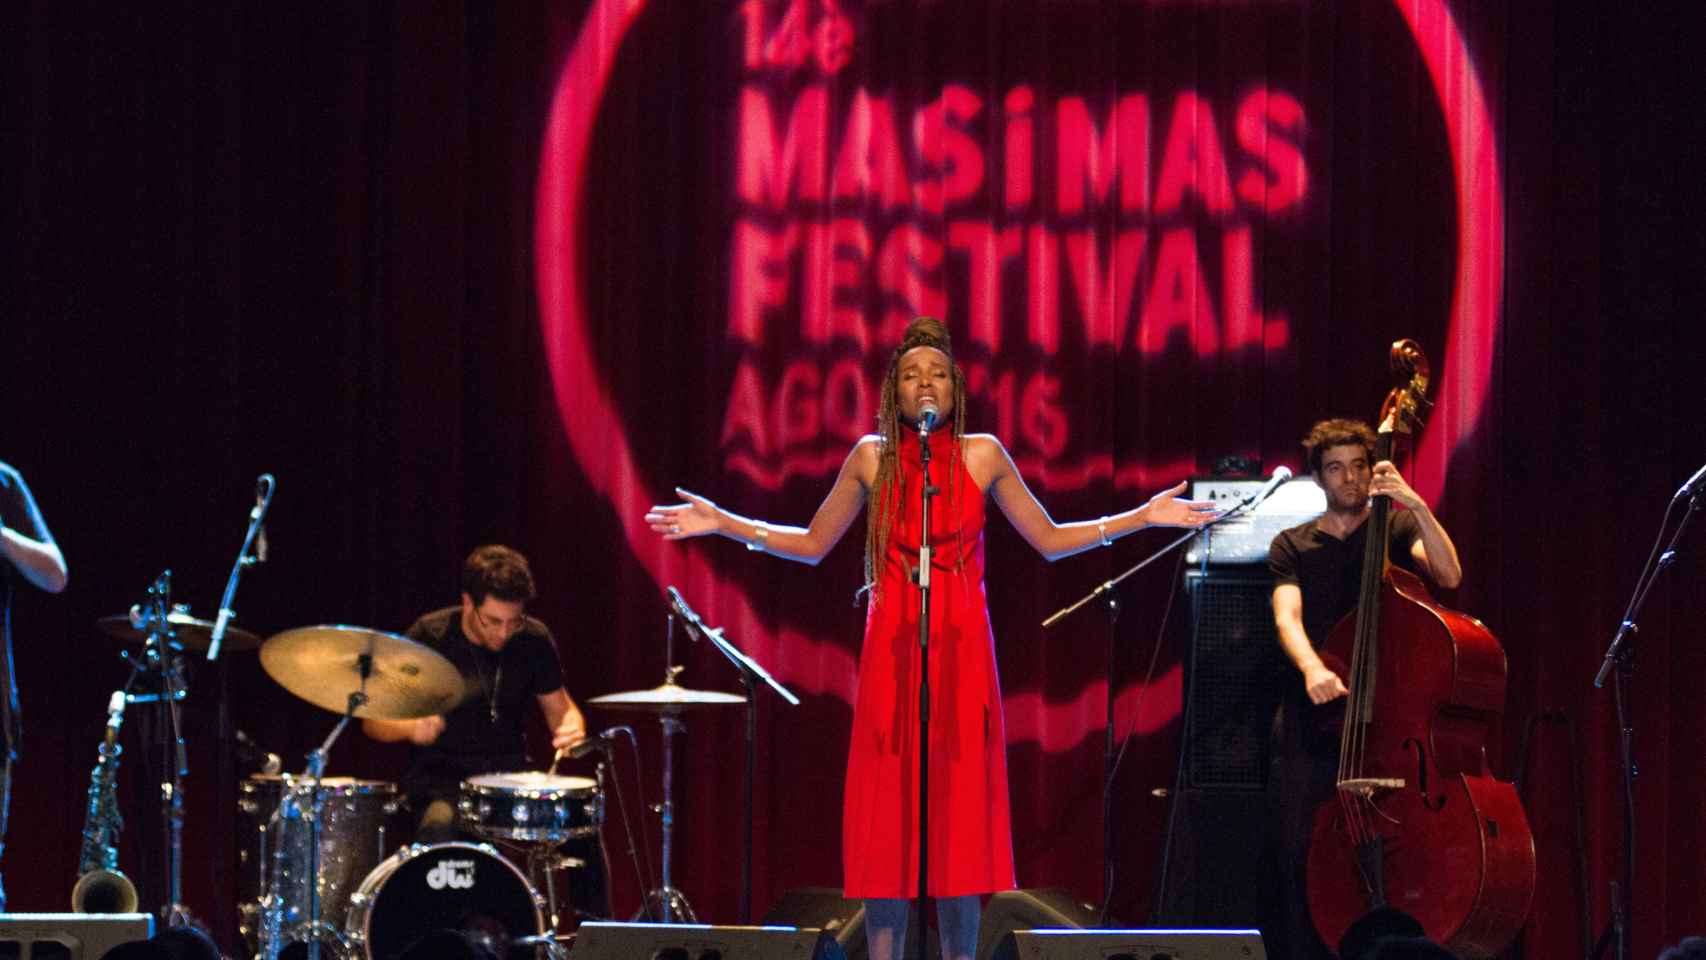 Ester Rada, en Mas i Mas Festival 17